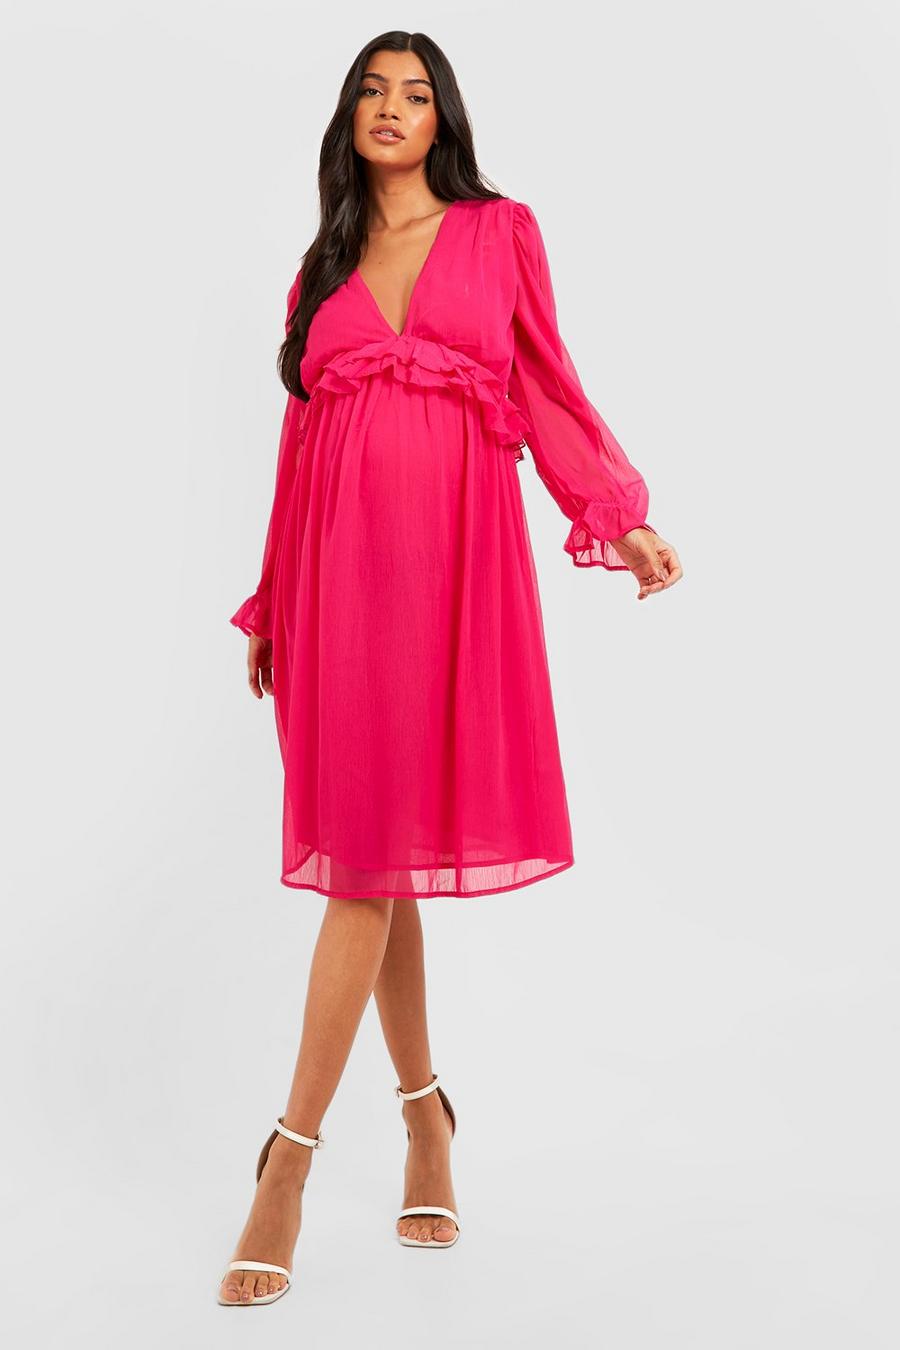 Hot pink Maternity Chiffon Frill Midi Dress